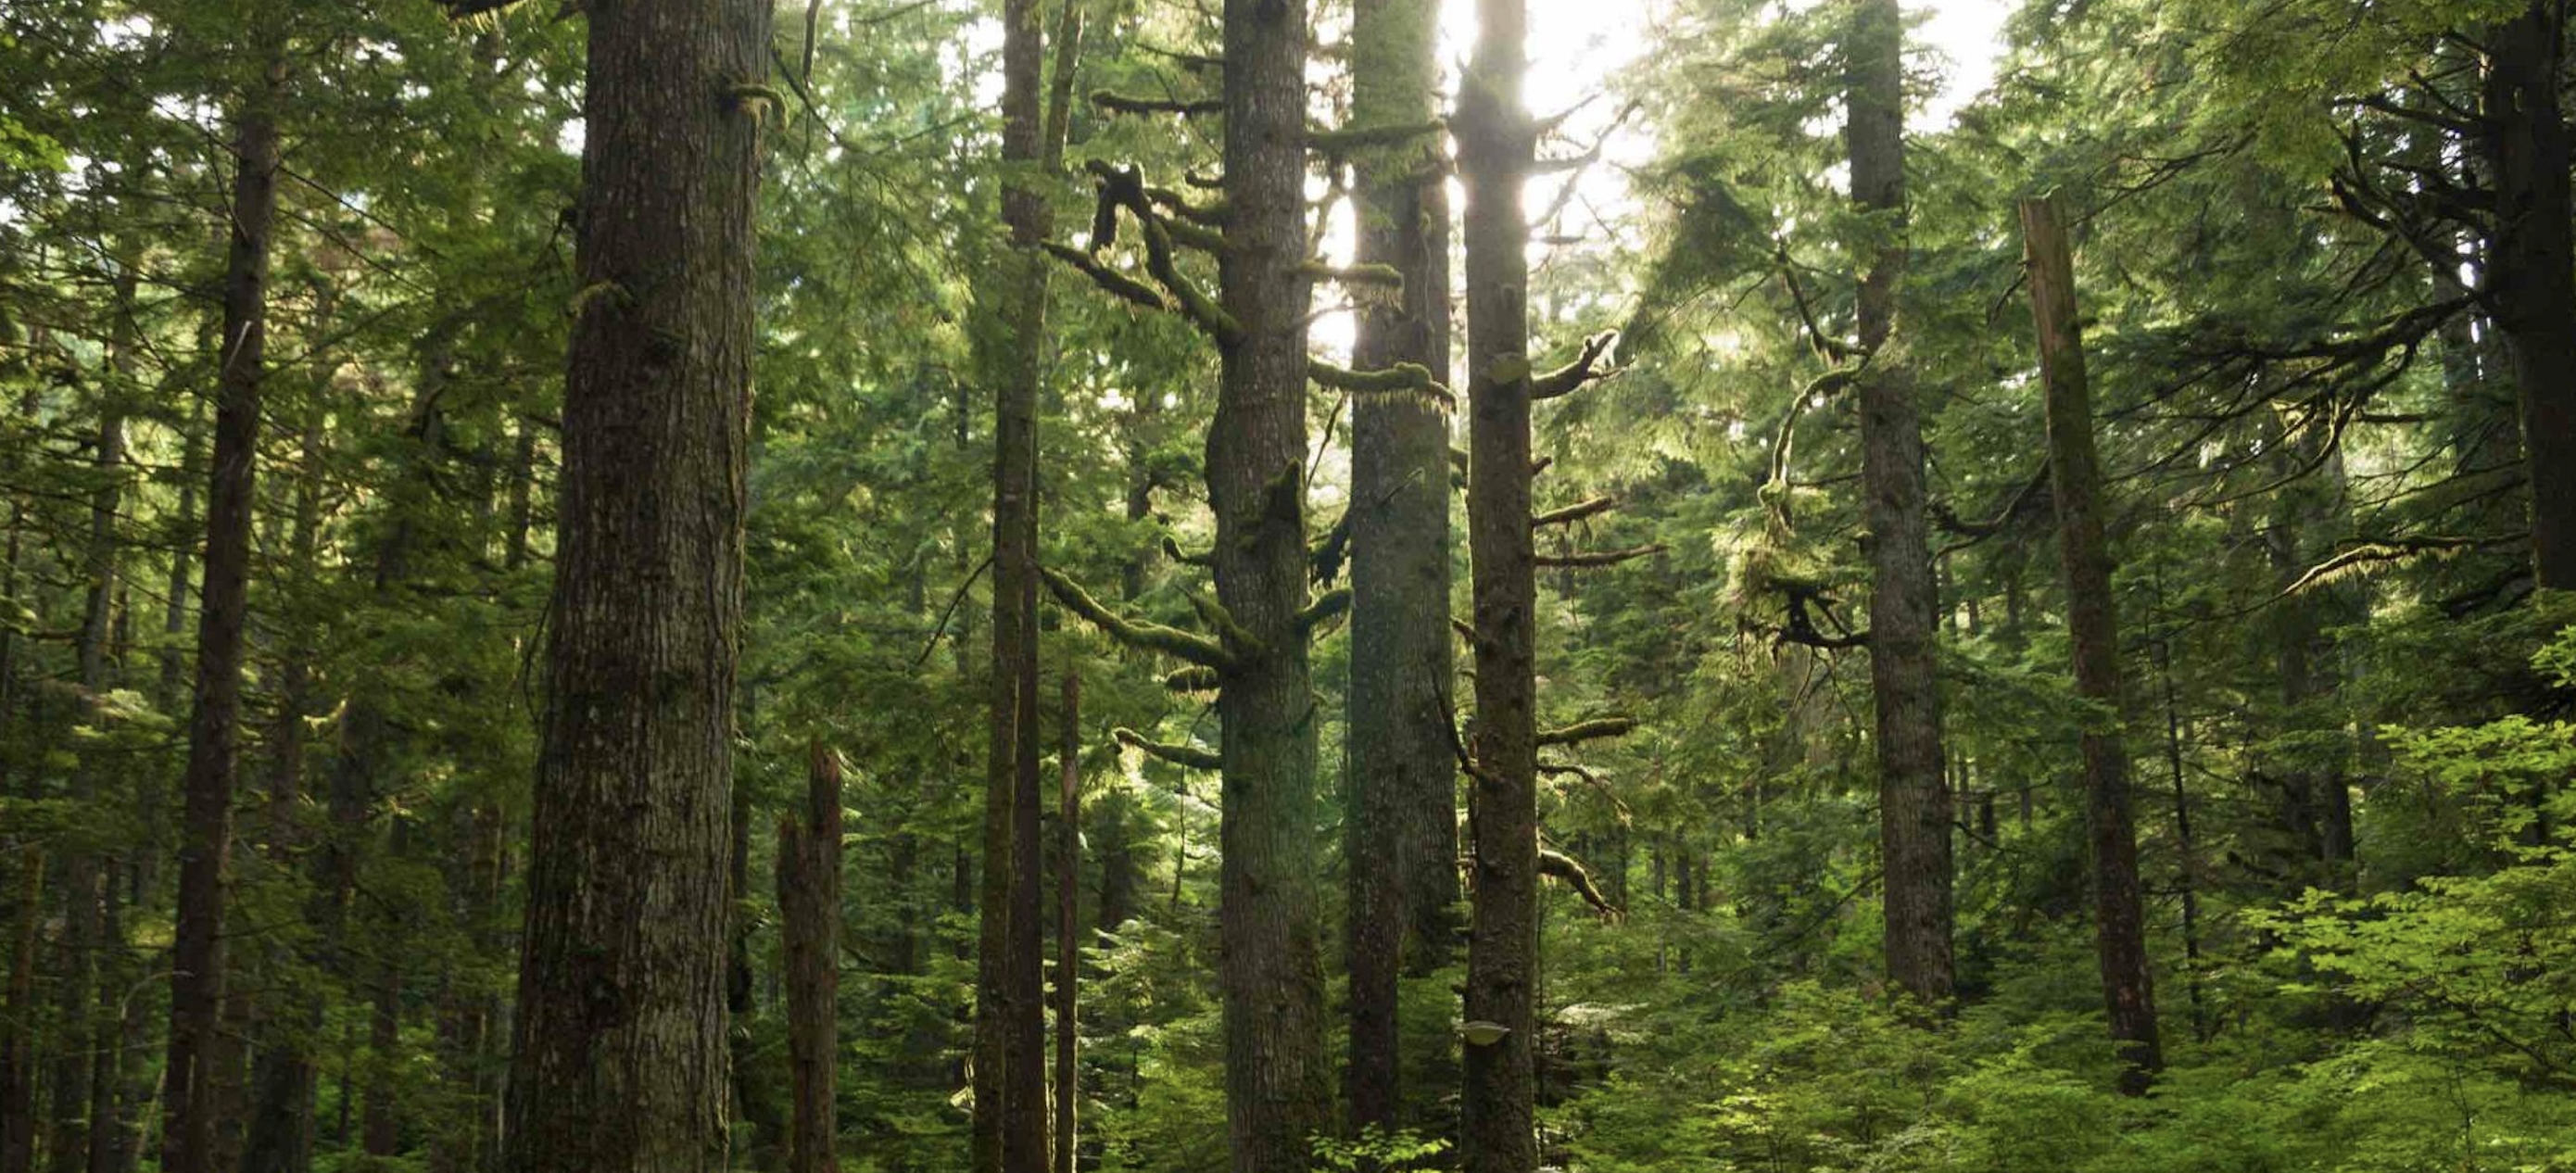 Як визначити, чи деревина, папір та інші продукти лісу є екологічно дружніми